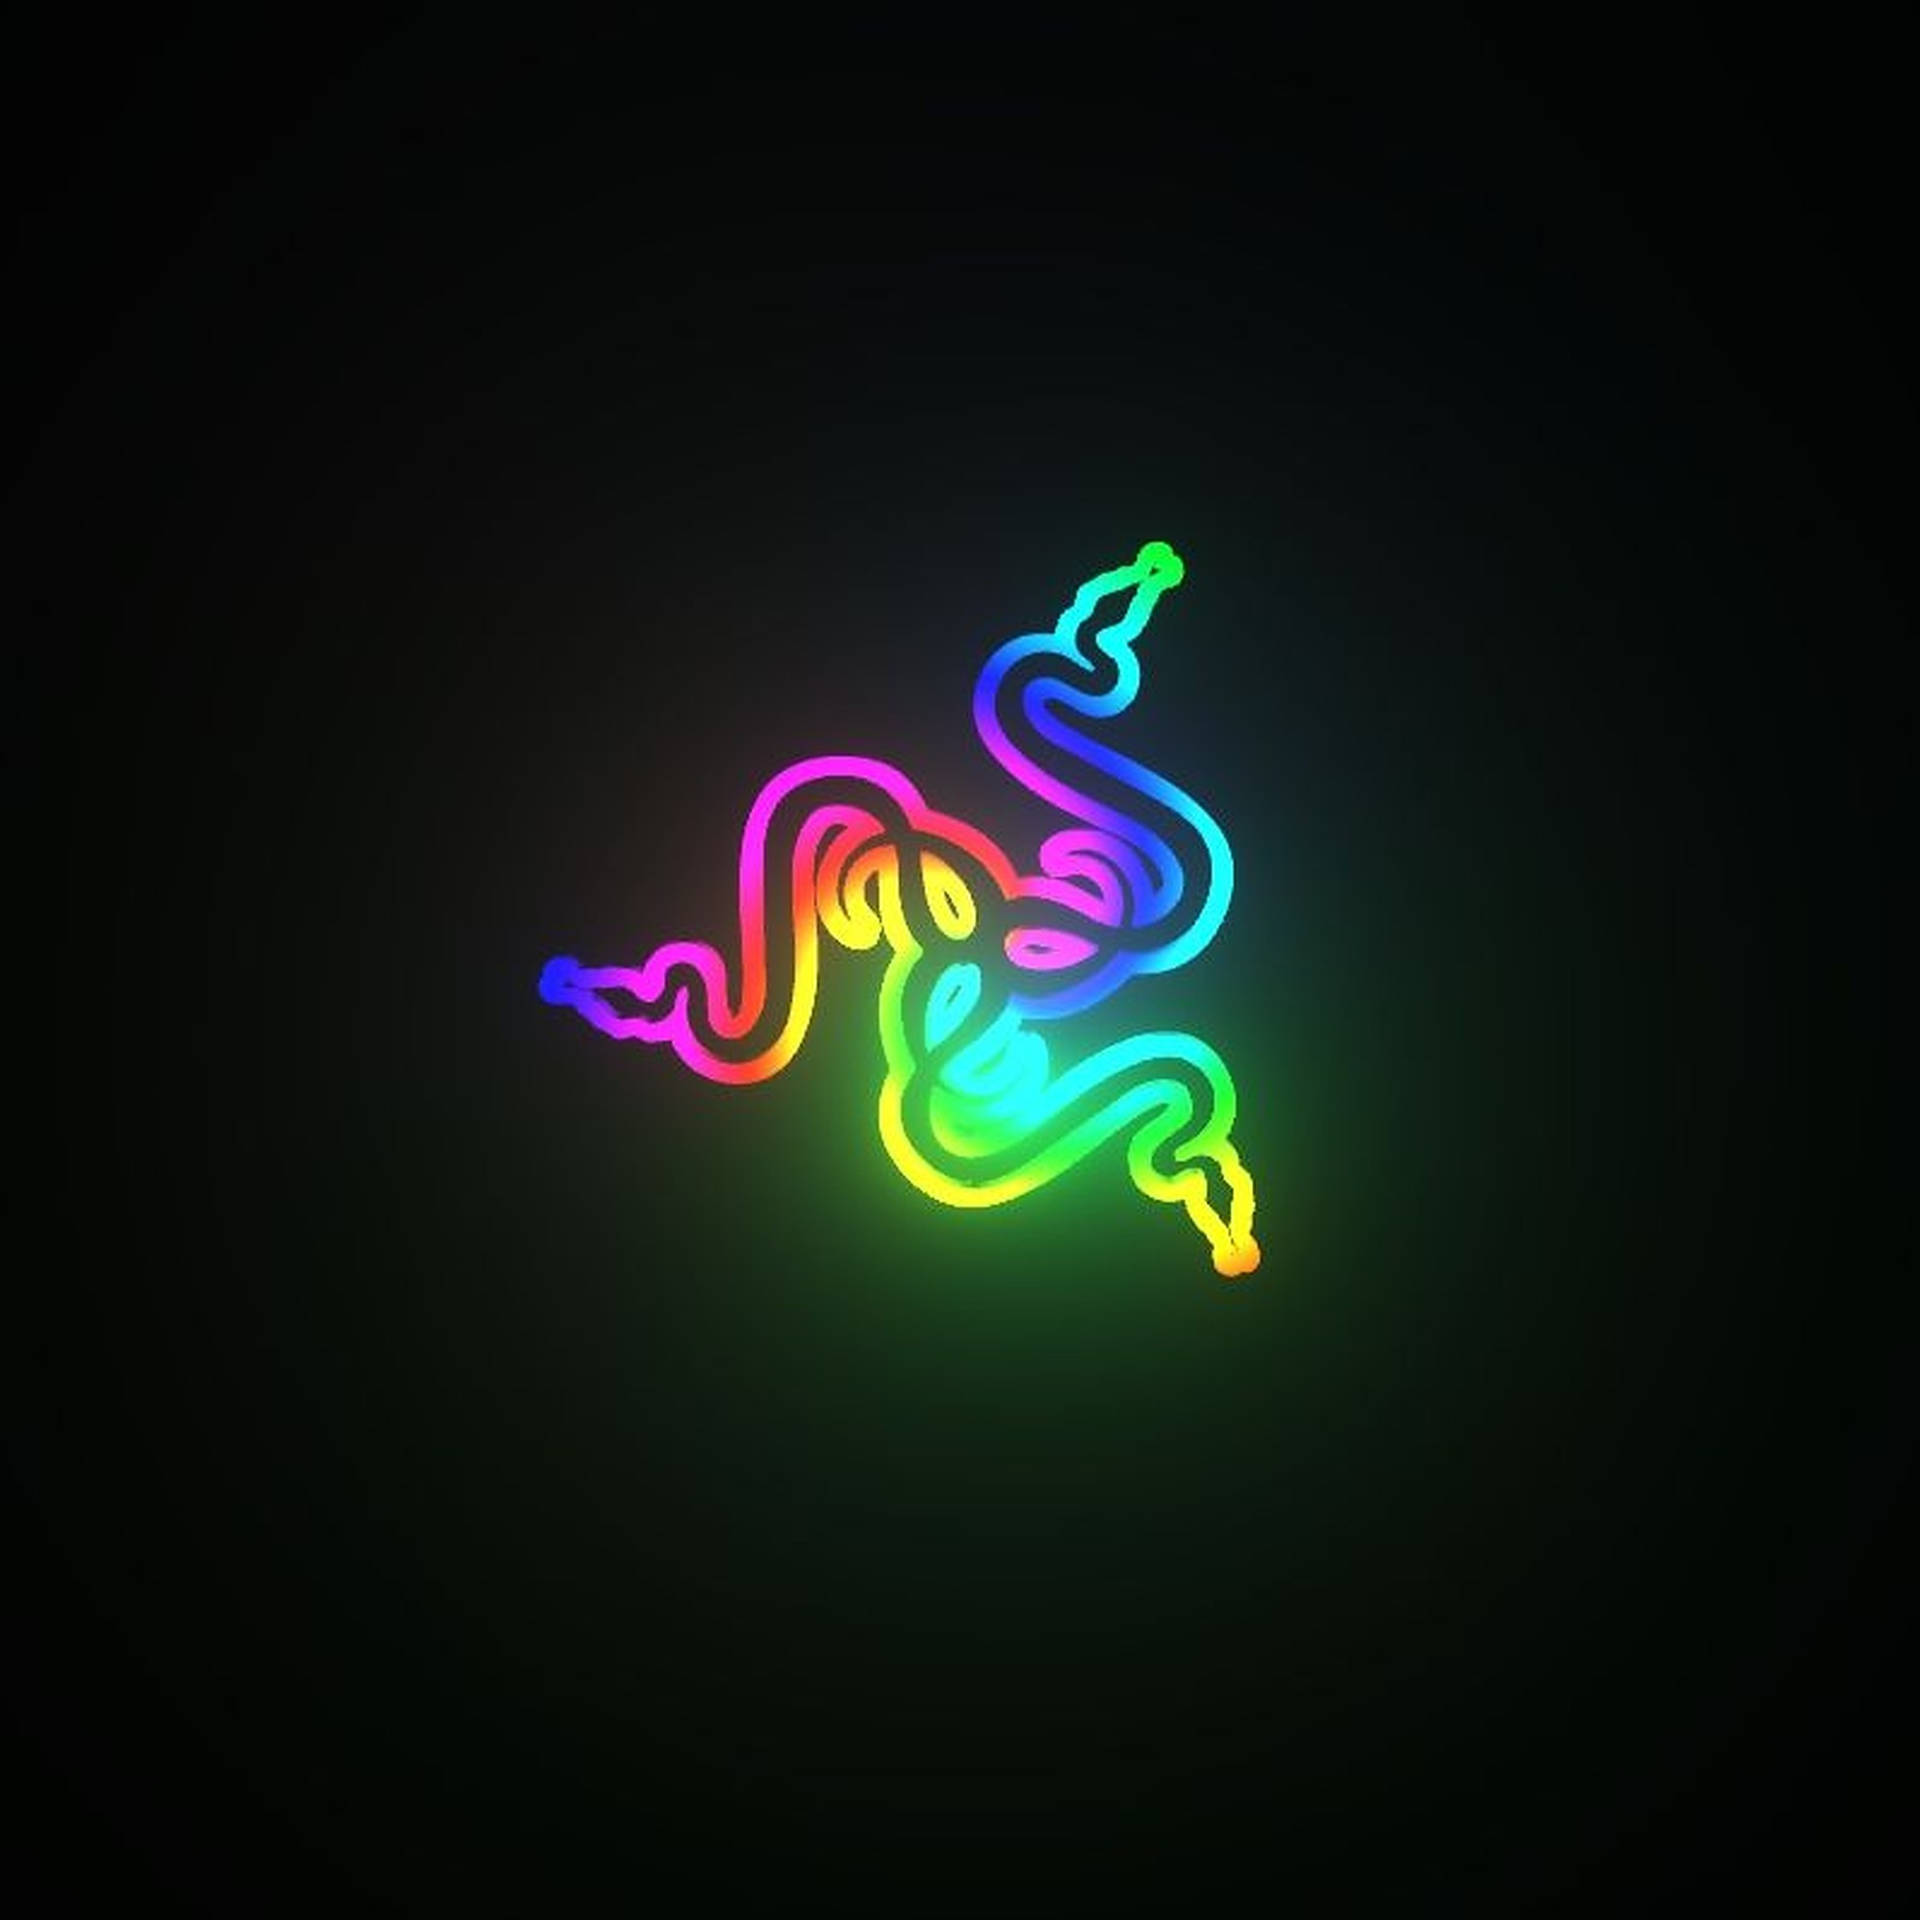 Razer LED Light Logo Wallpaper